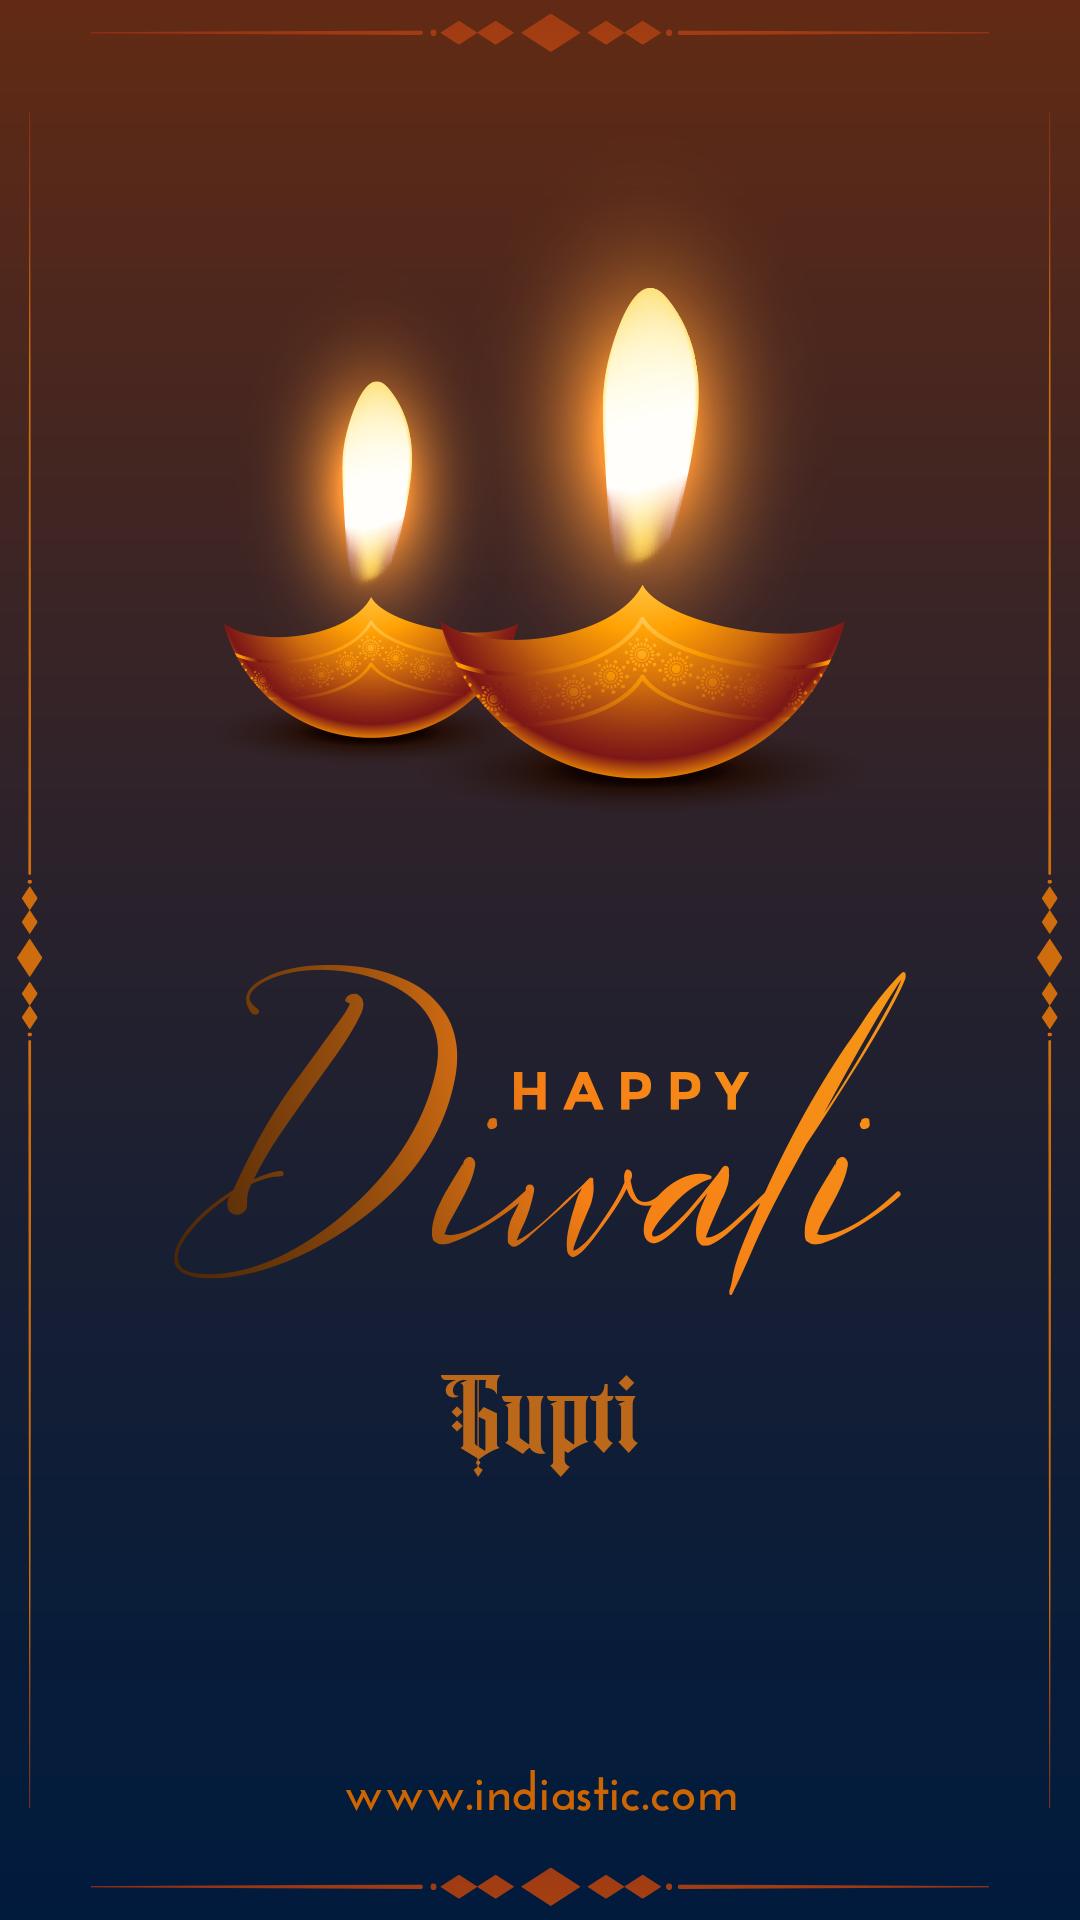 Happy Diwali Gupti Image